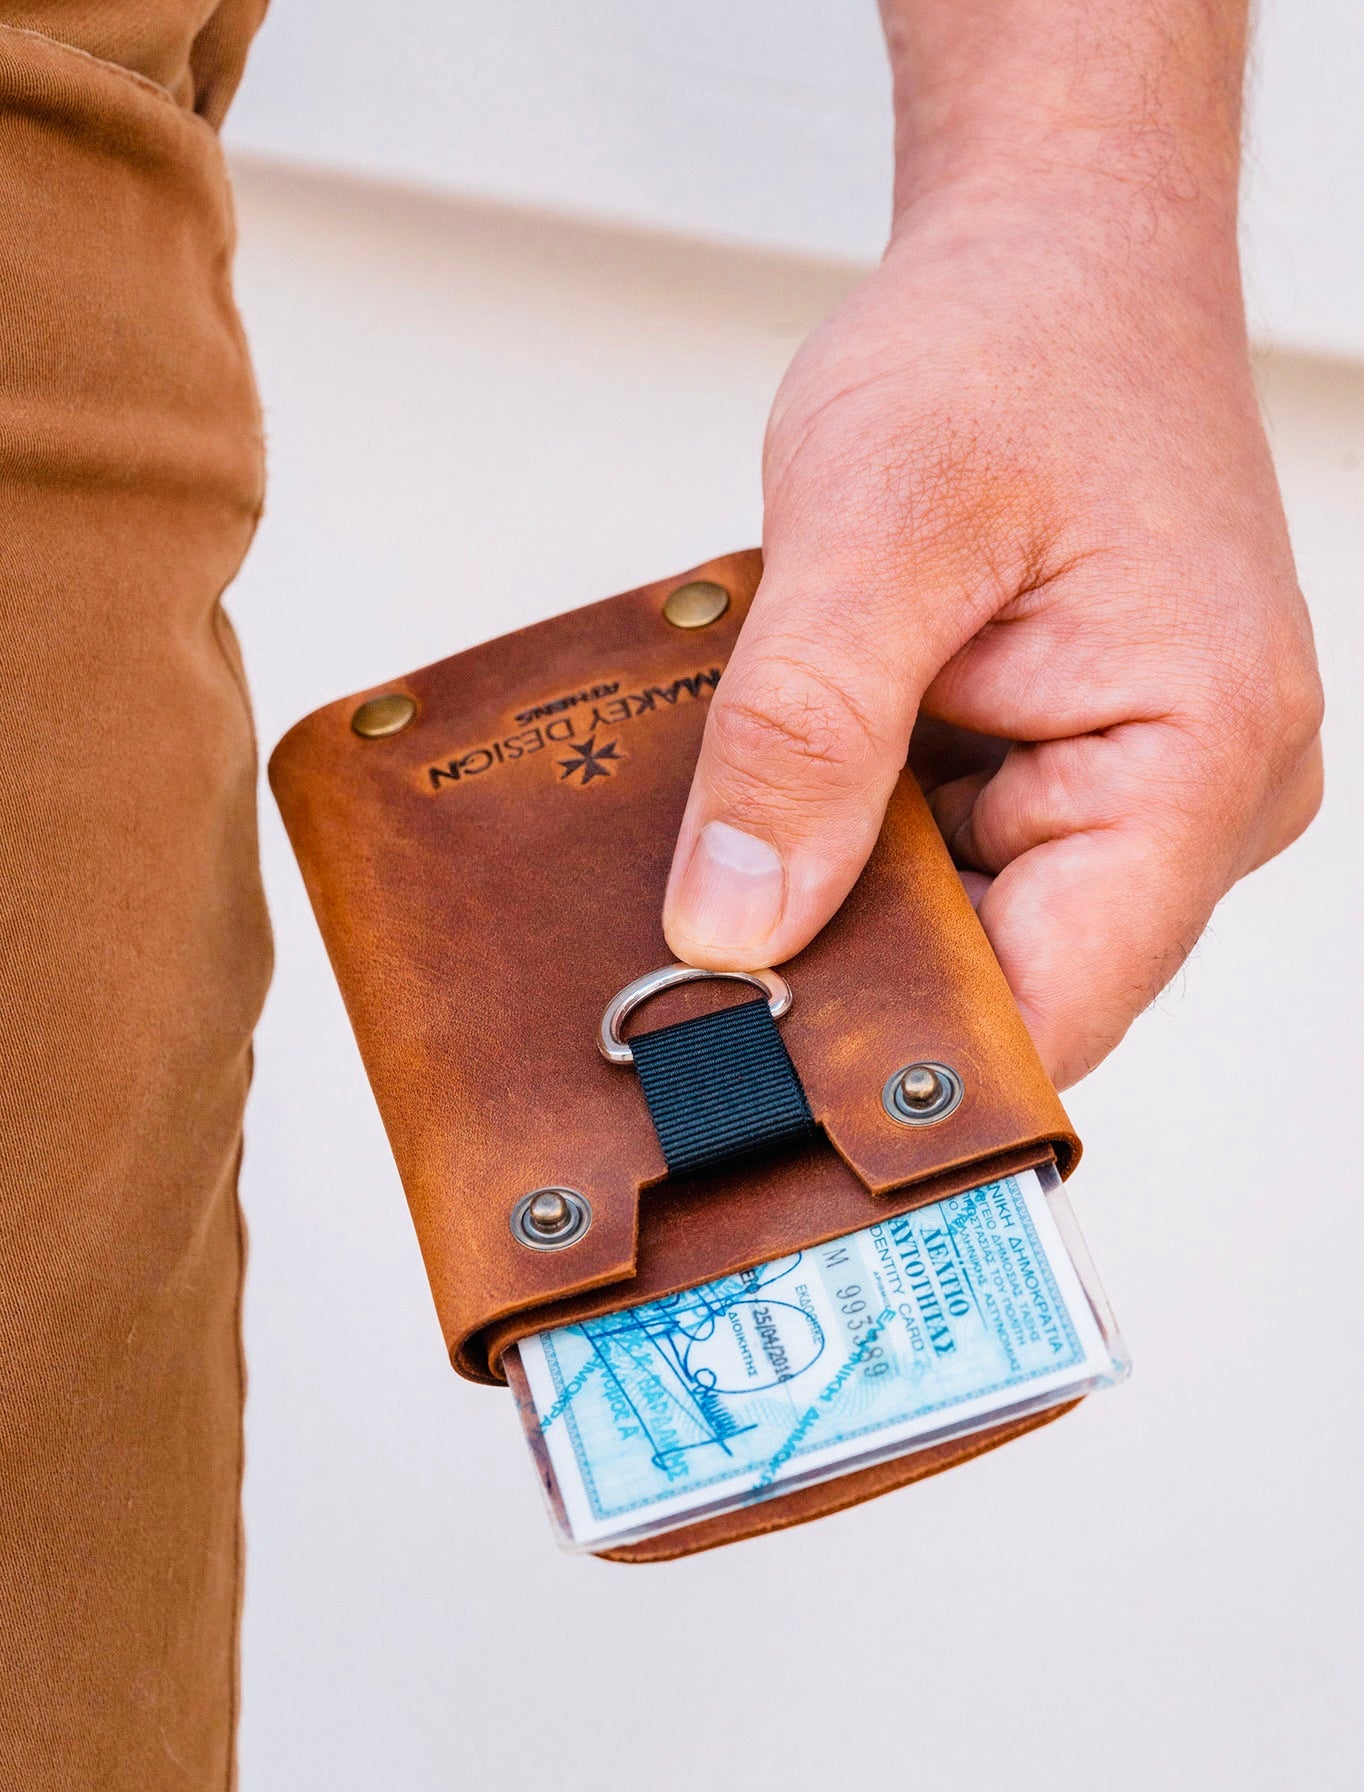 Portemonnee voor kaarten, biljetten en munten "iD Wallet"